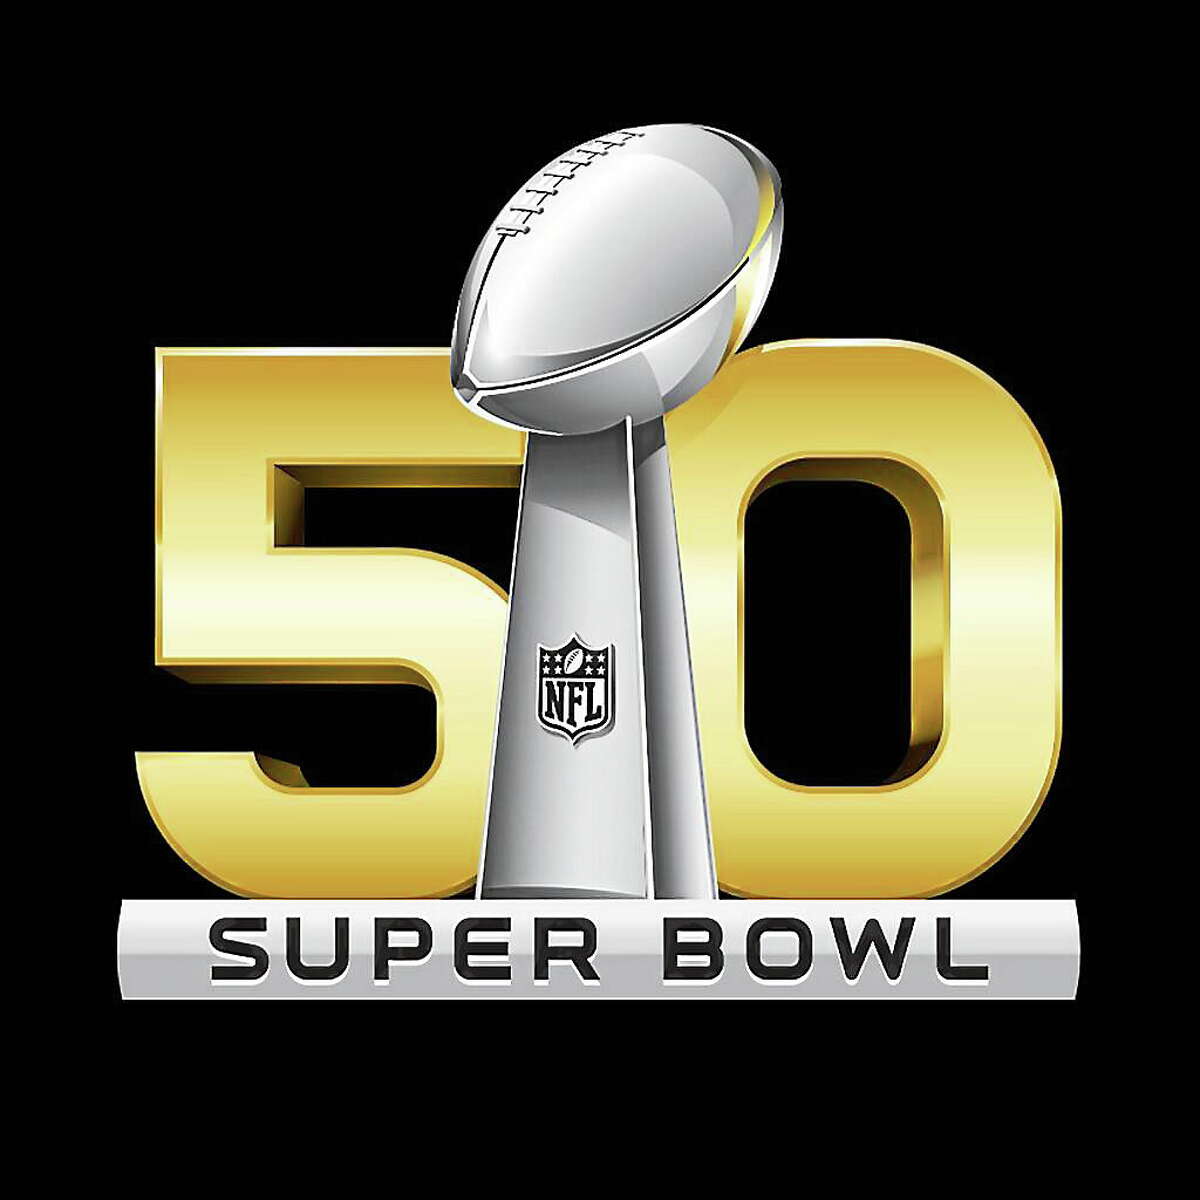 Super Bowl 50 will not be Super Bowl L.